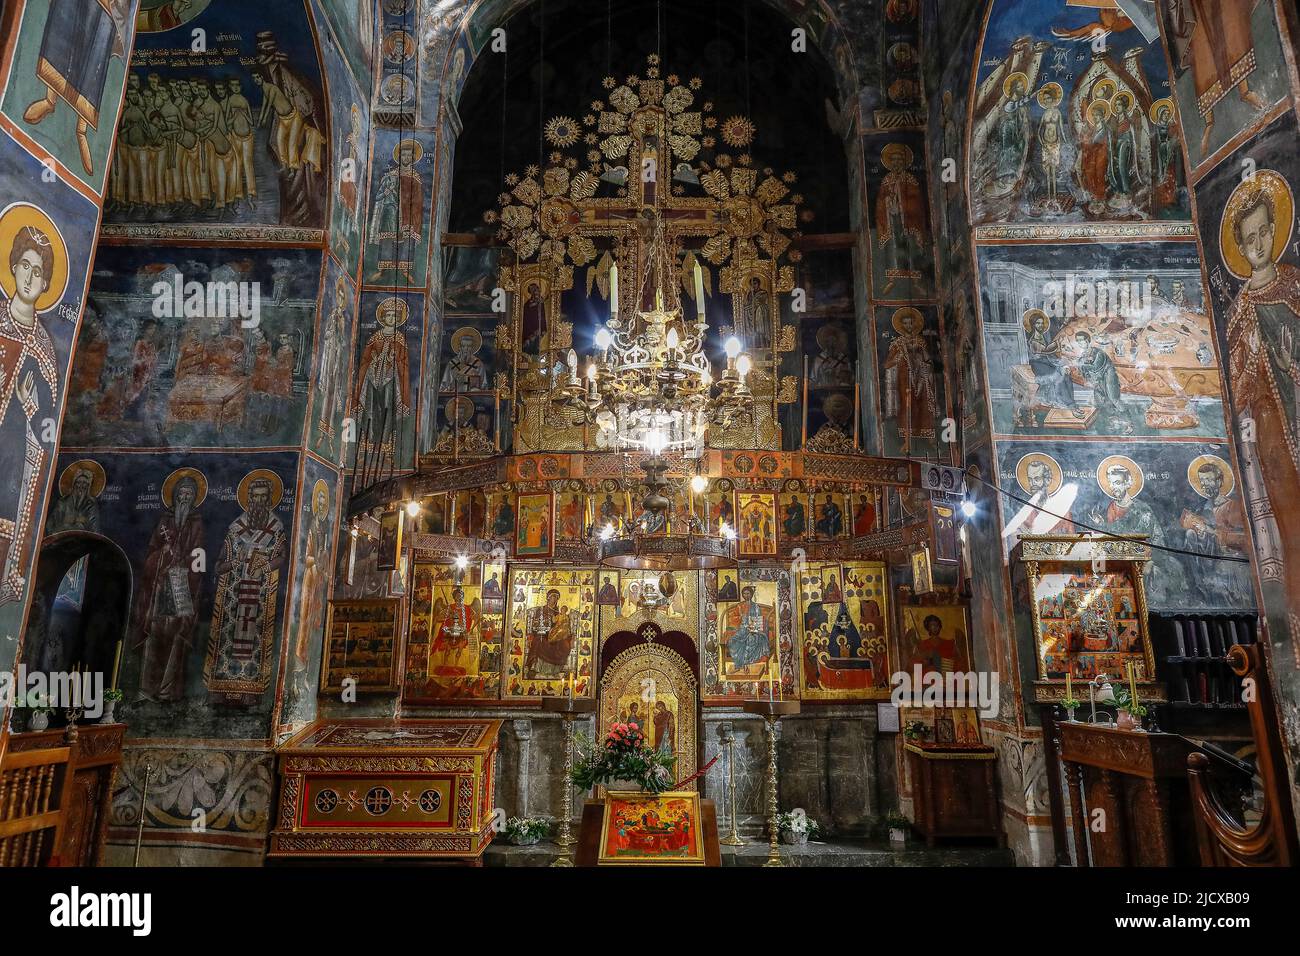 Monastero ortodosso di Moraca, provincia di Kolasin, Montenegro centrale, Europa Foto Stock